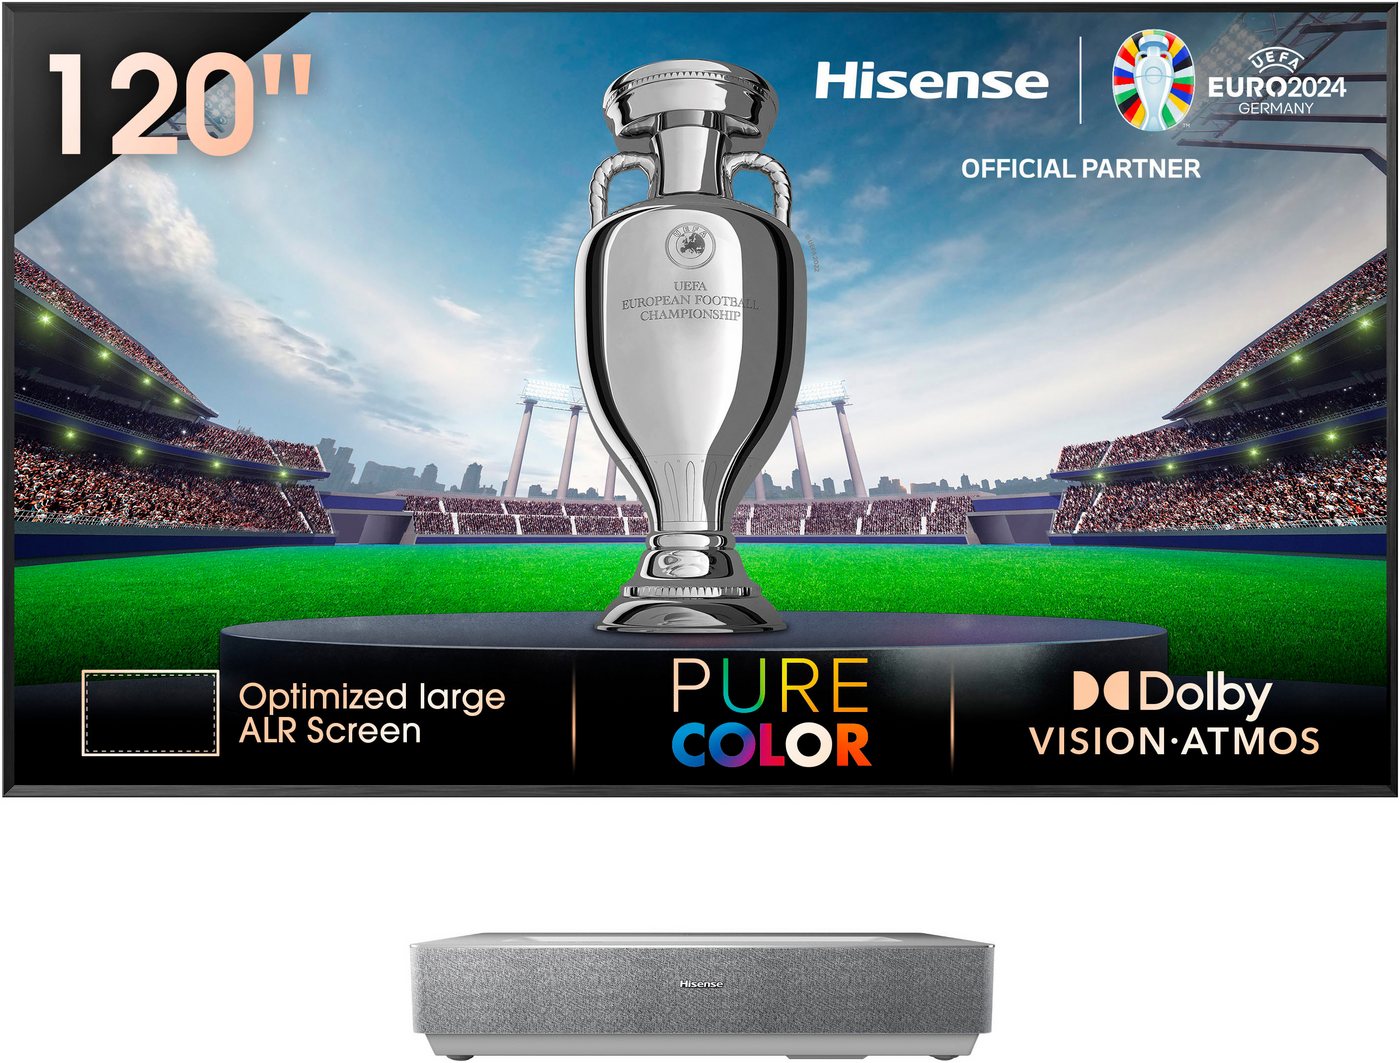 Hisense 120L5HA Laser-TV (2700 lm, 3840 x 2160 px) von Hisense